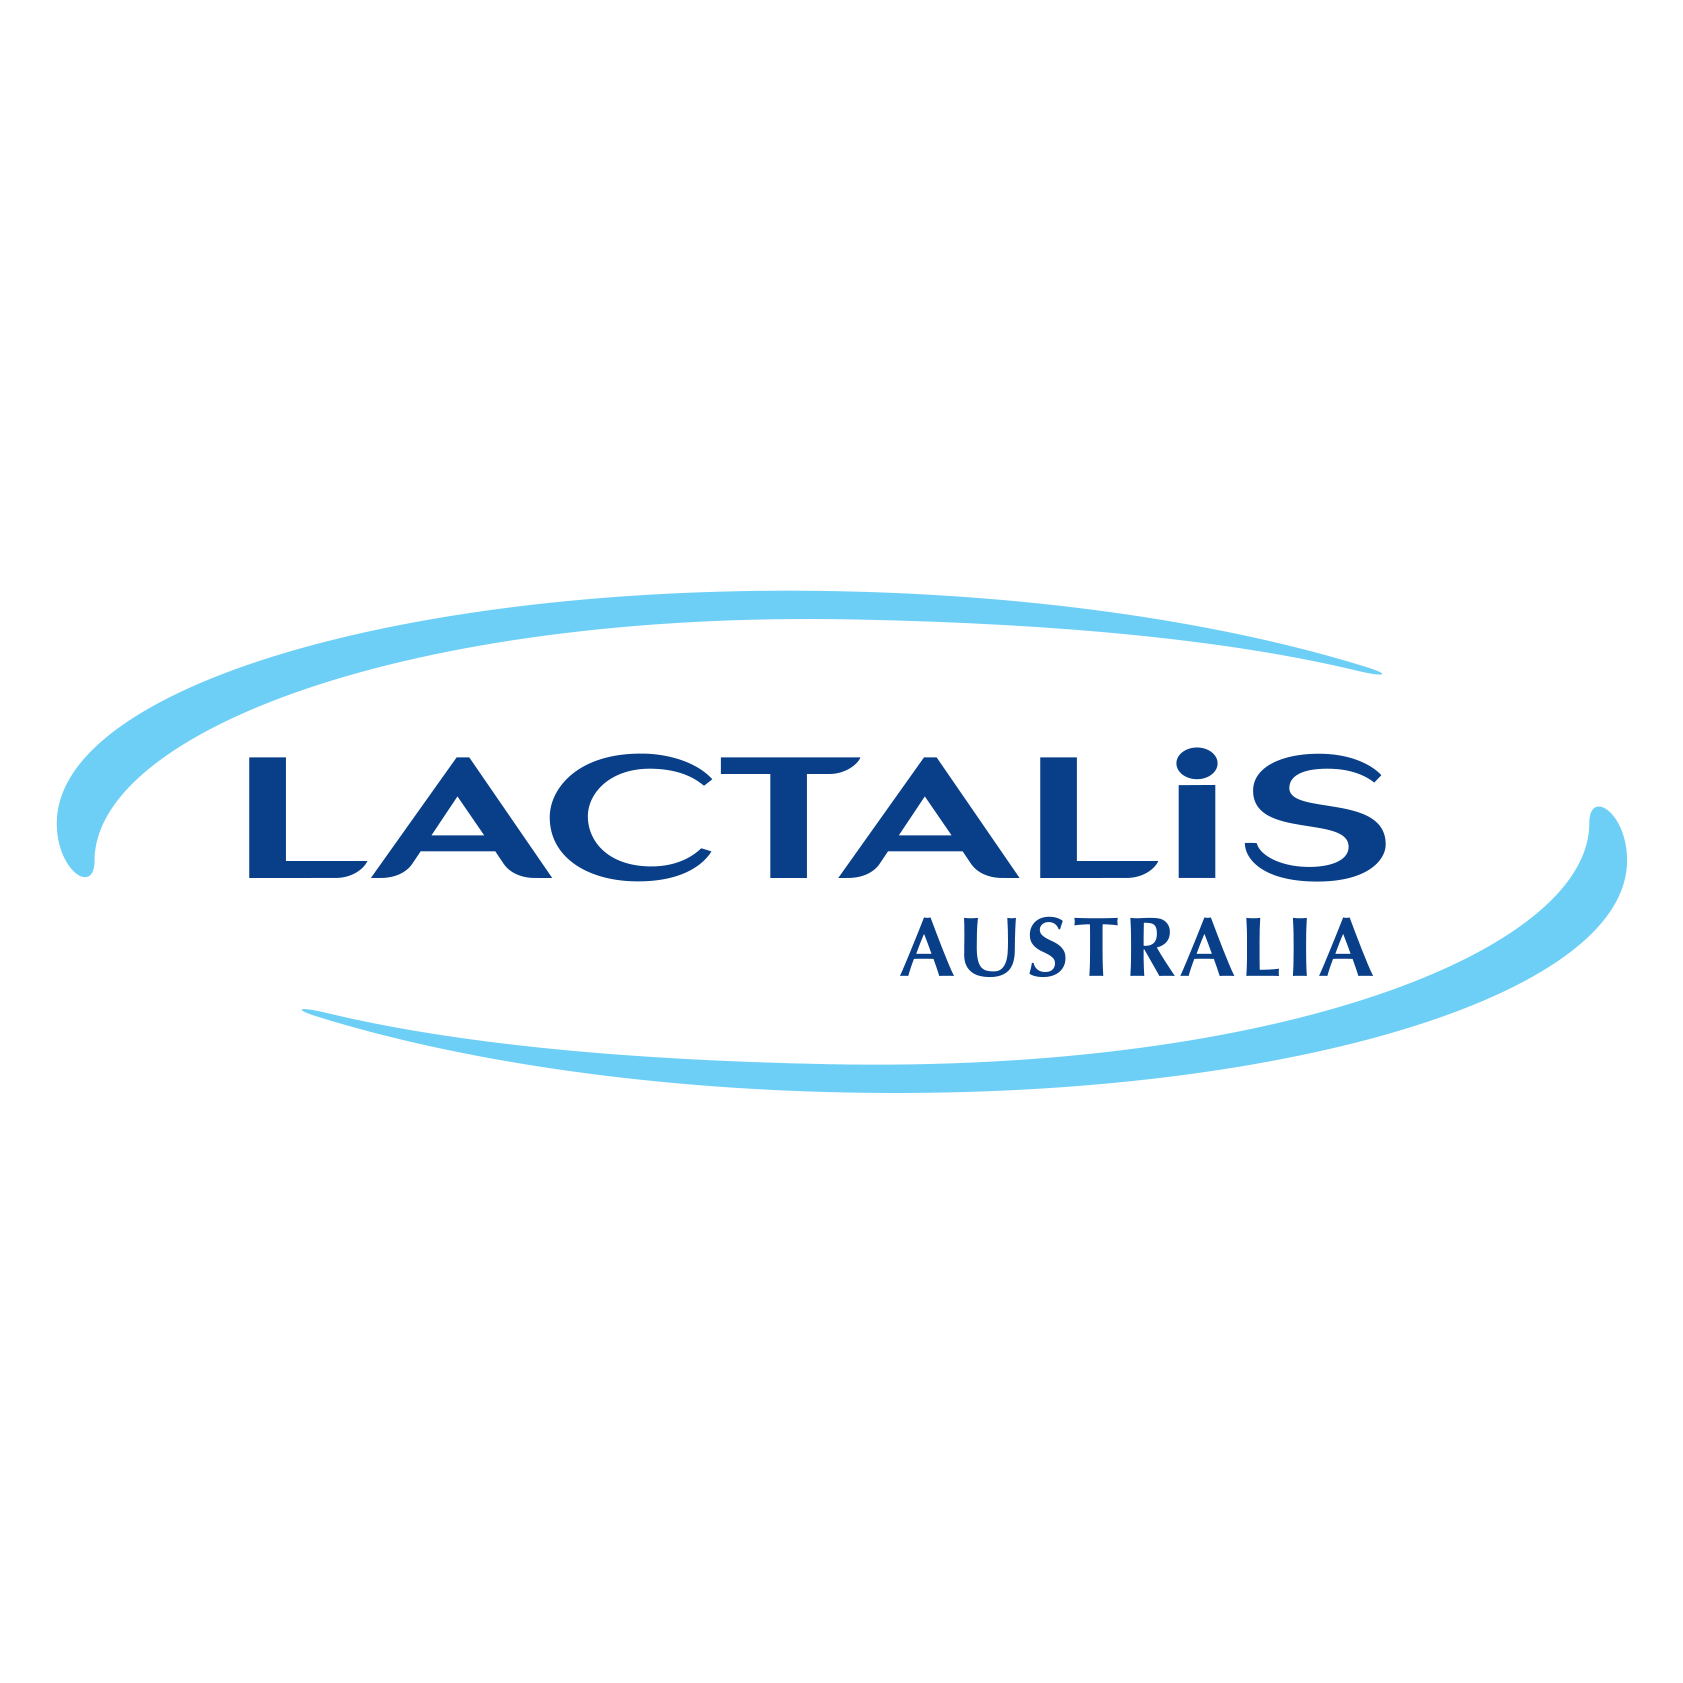 Lactalis Australia Pty Ltd Logo